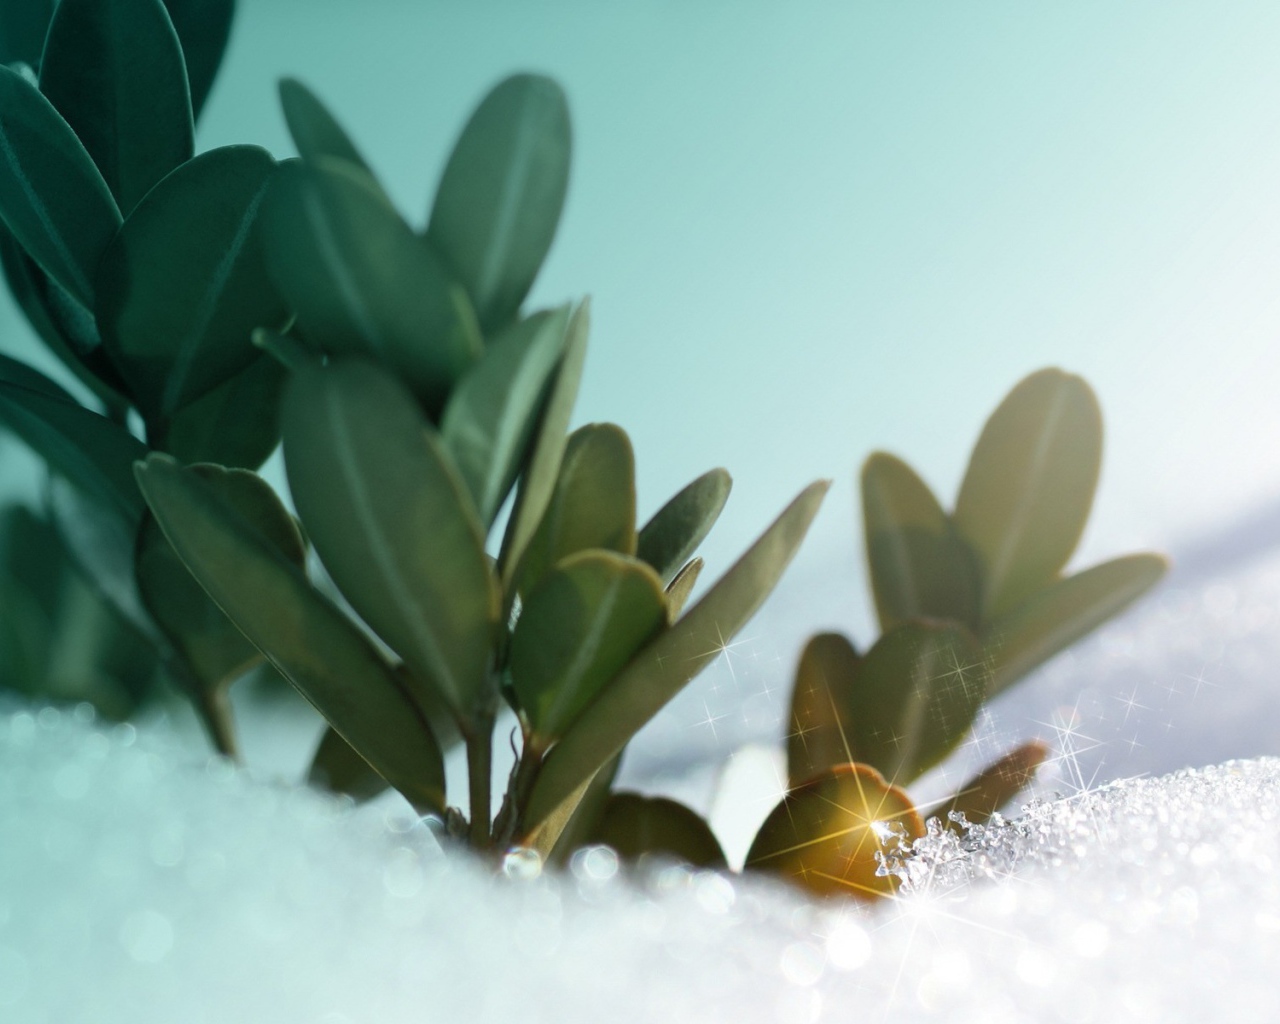 Зеленые растения под искрящимся снегом